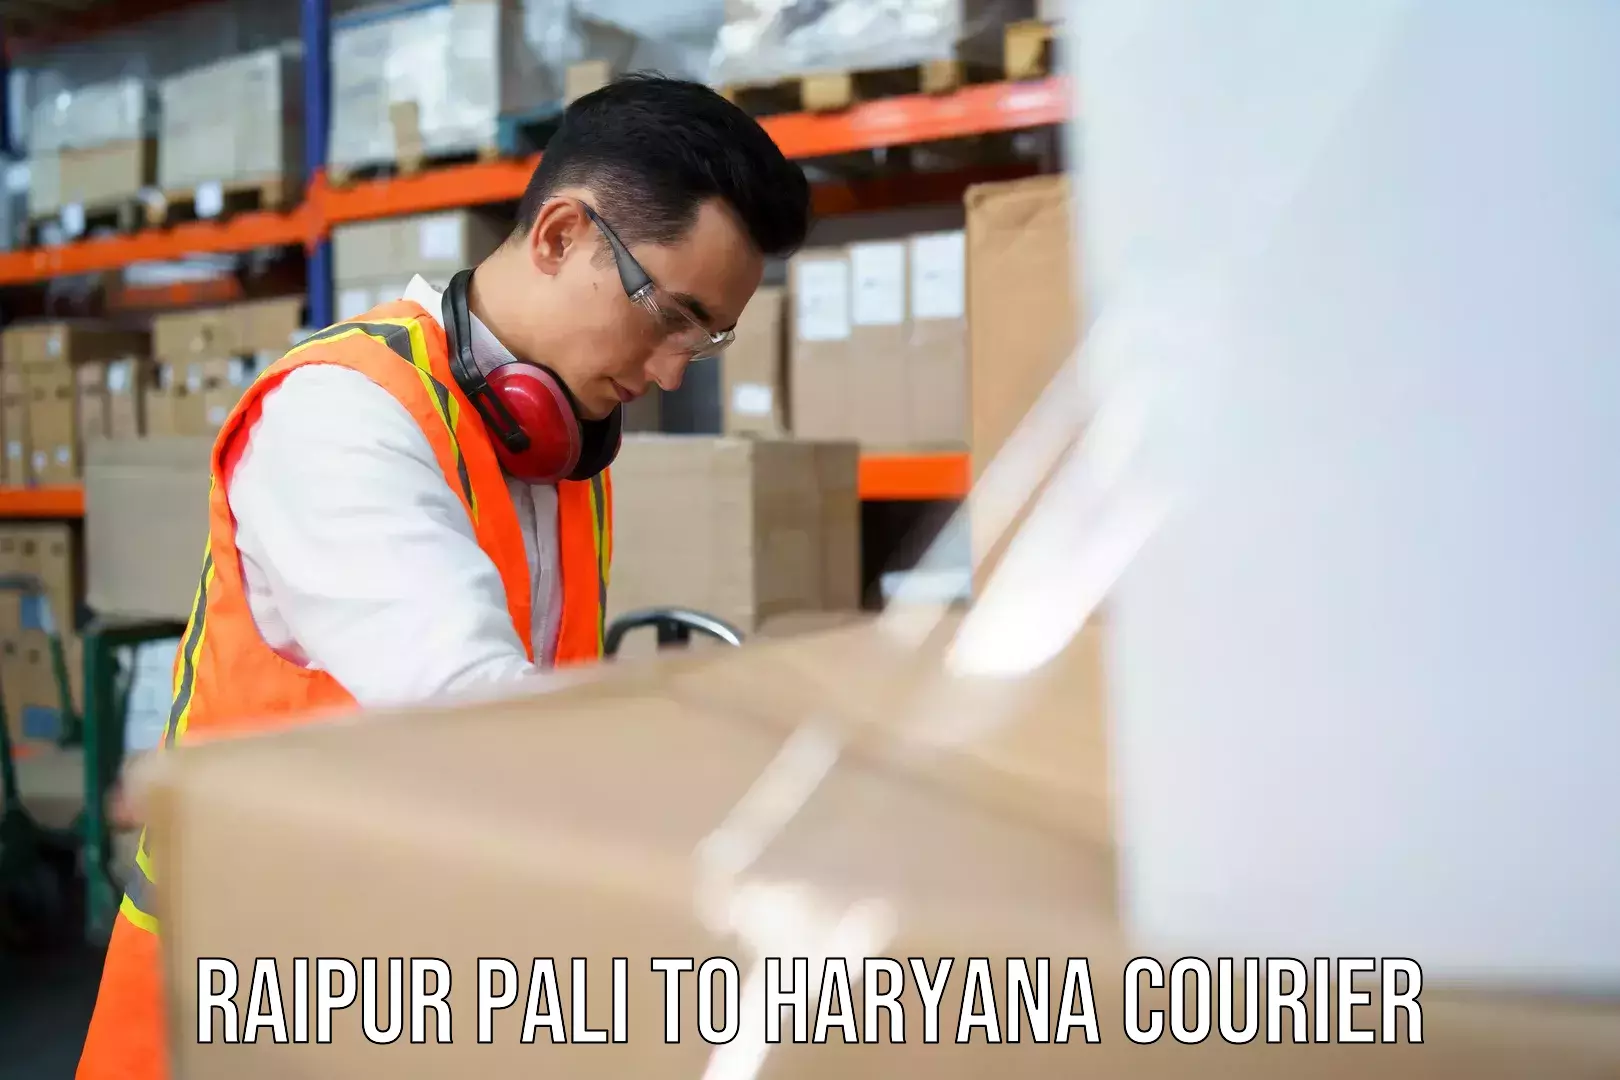 Customer-centric shipping Raipur Pali to Gohana